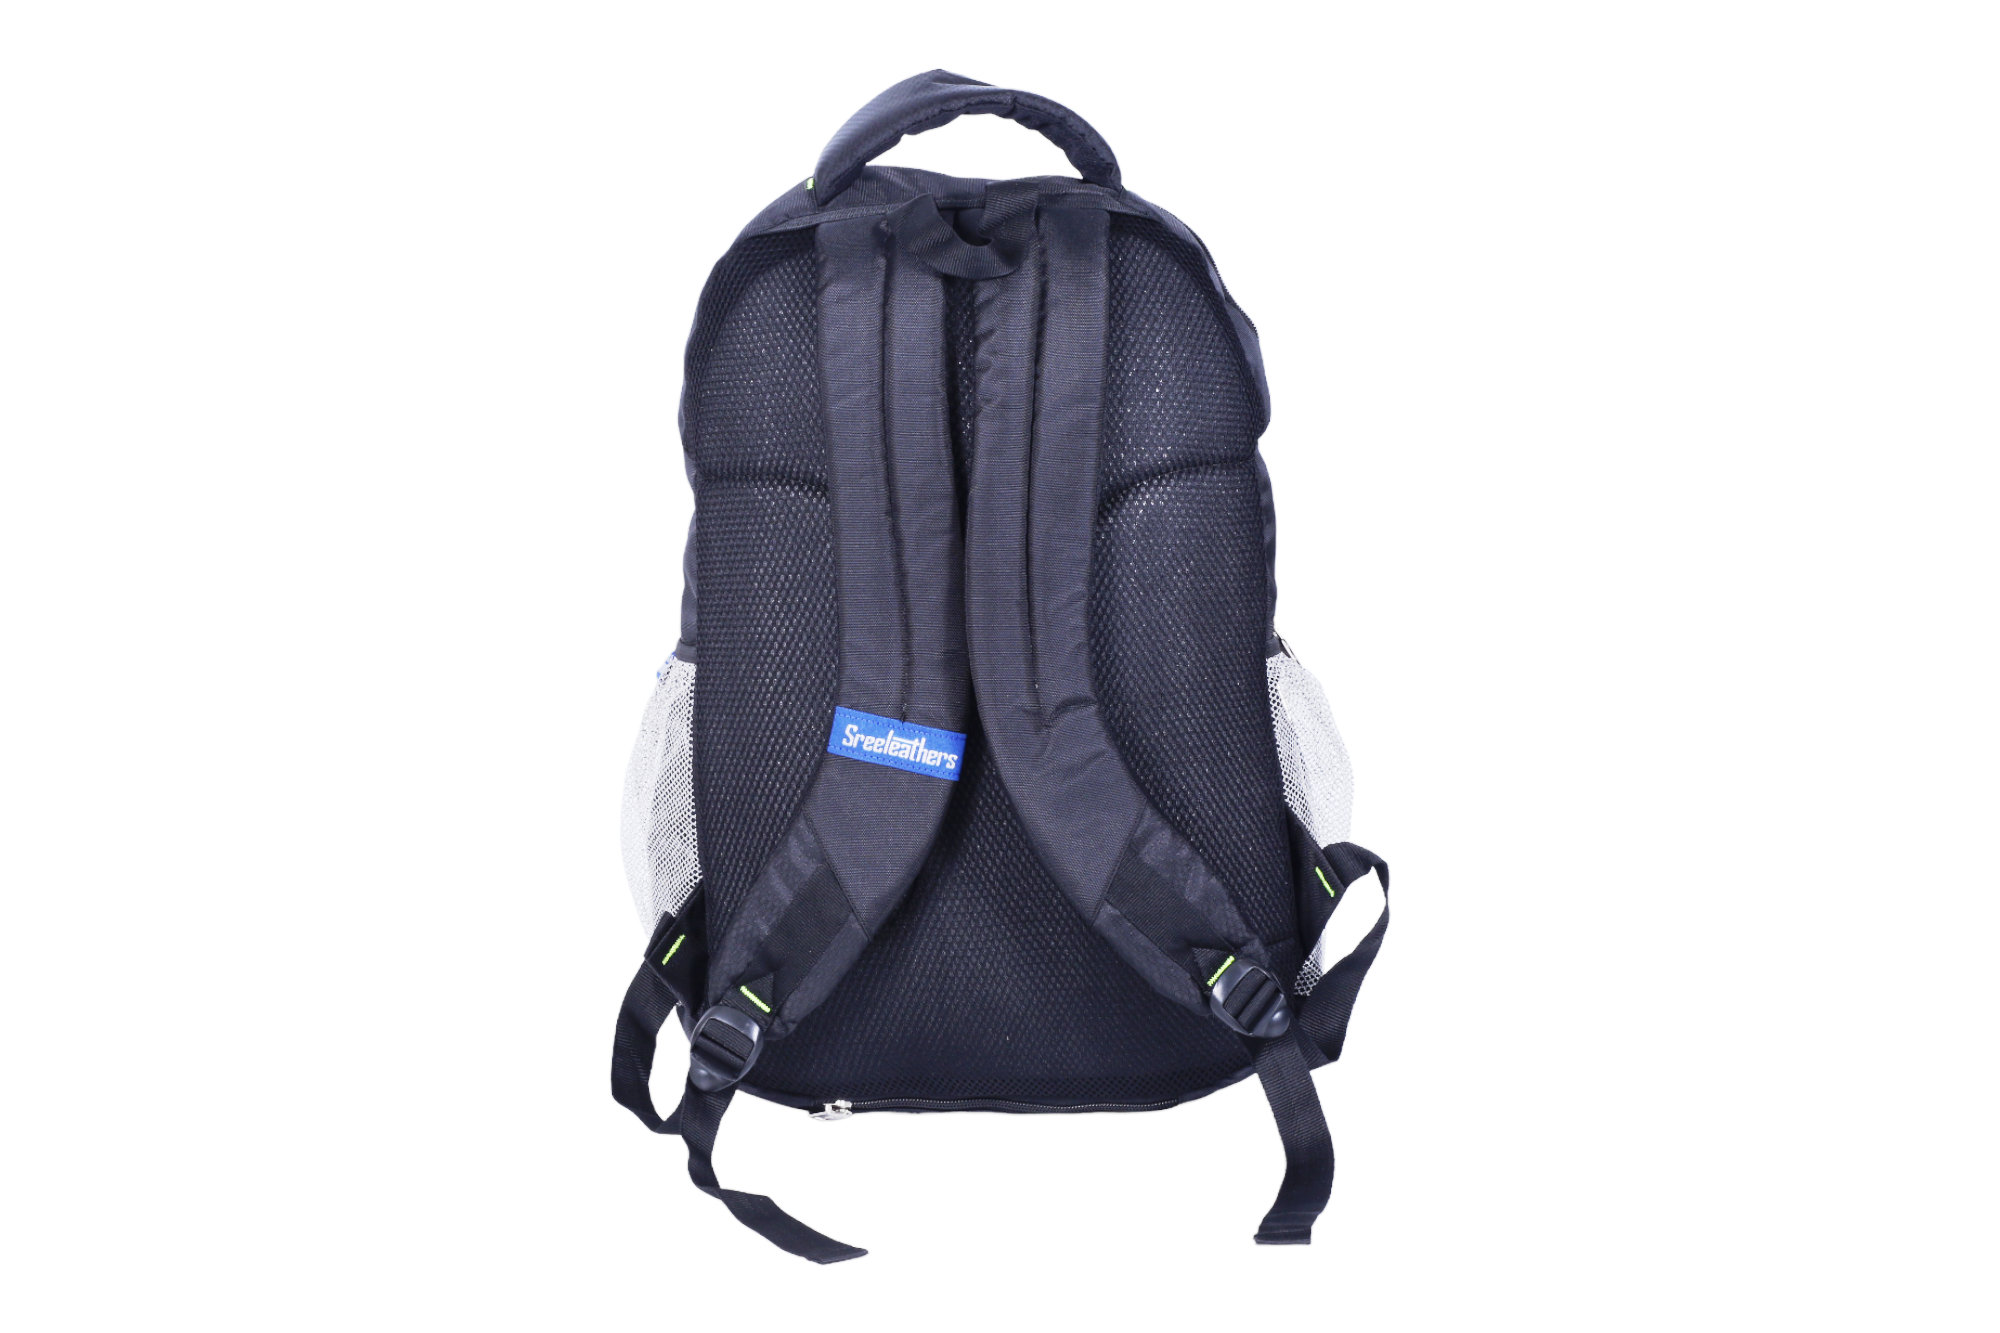 108921 Leather Portfolio Bag – Sreeleathers Ltd